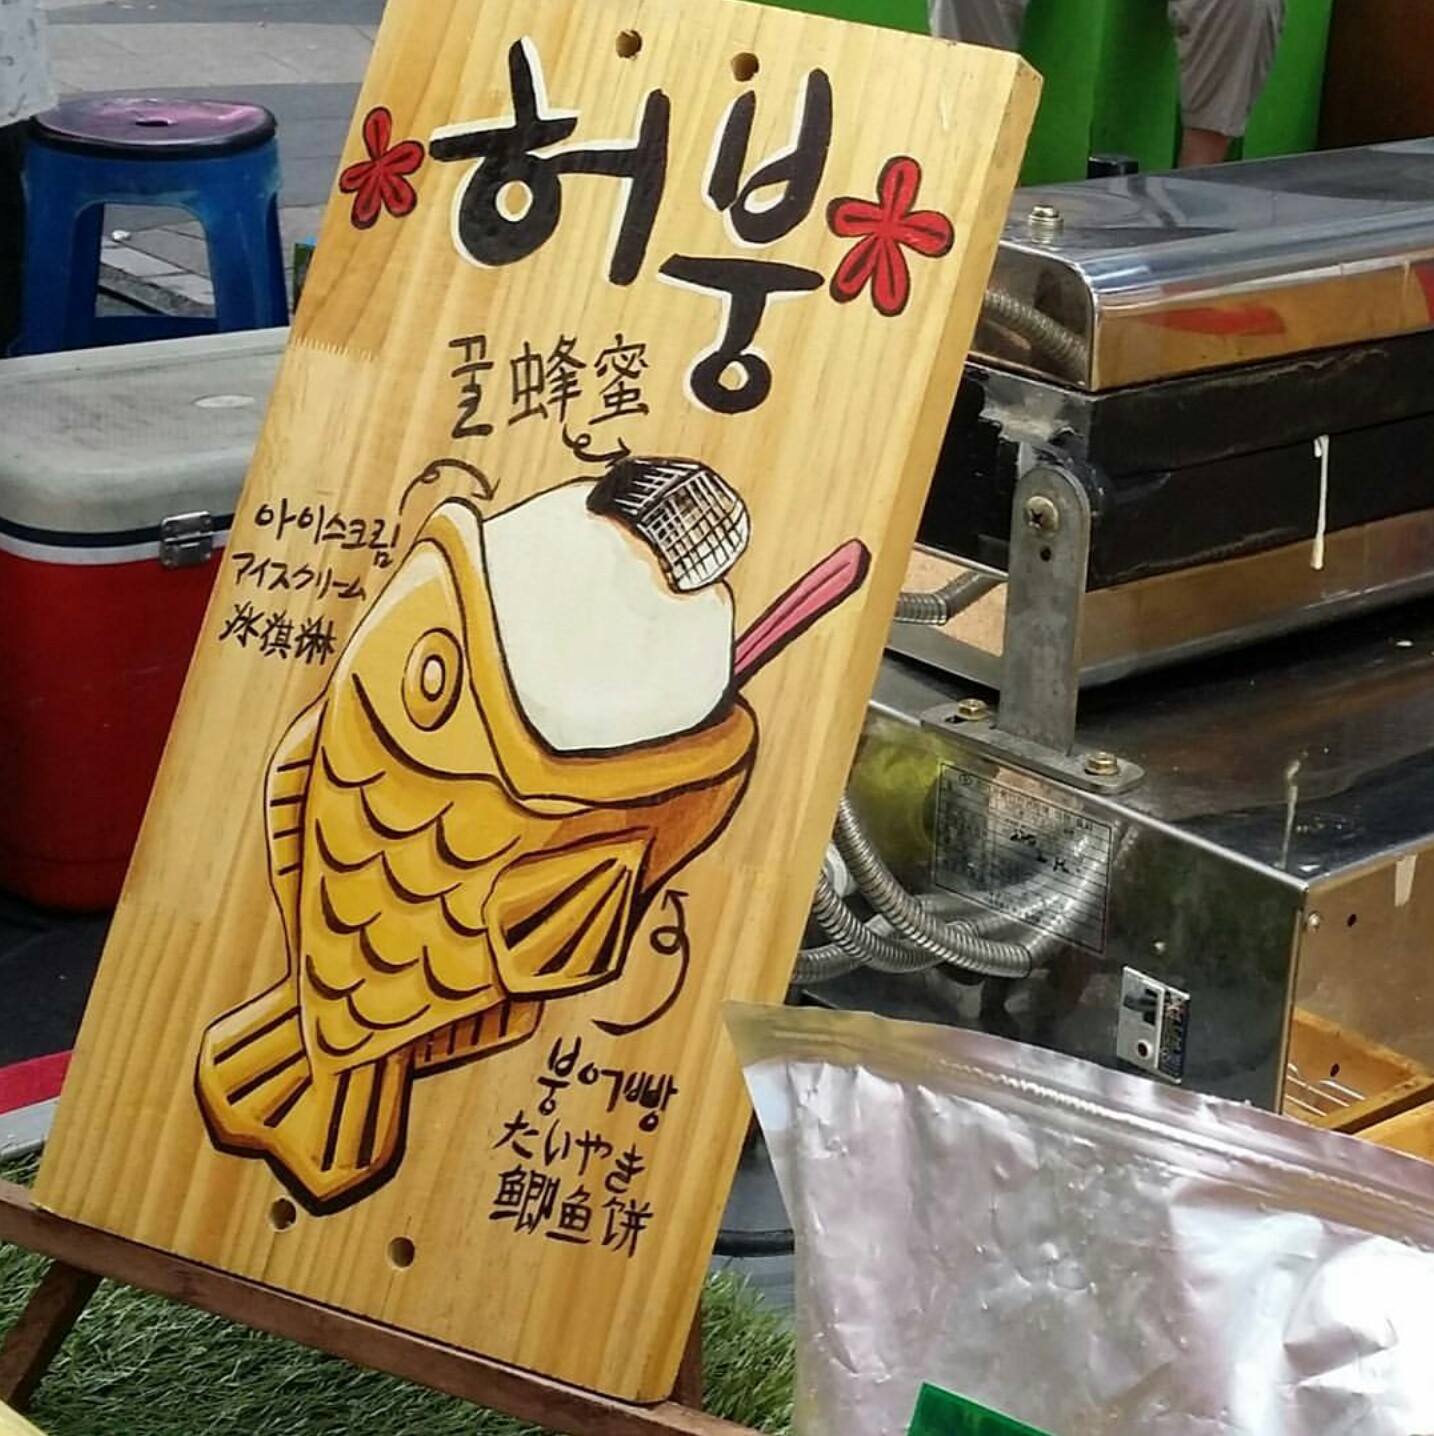 แชร์พิกัด! ขนม ของหวาน น่ารัก น่ากิน ที่เกาหลี ไปแล้วไม่ควรพลาด!! [มีภาพรีวิวด้วย]